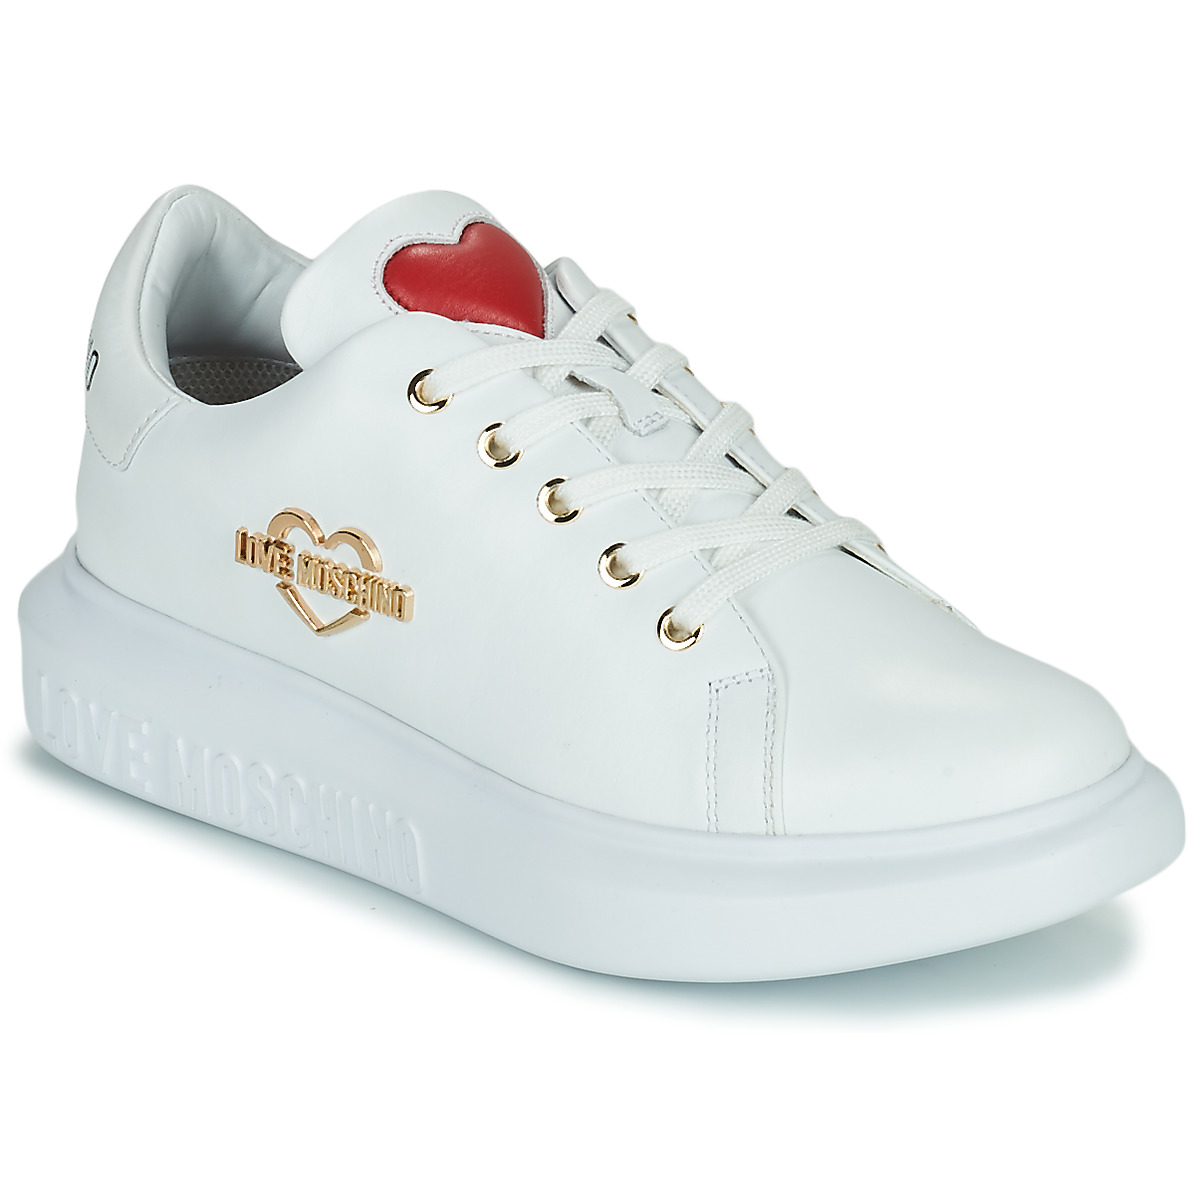 Love Moschino Shoes Sale Uk on Sale | website.jkuat.ac.ke